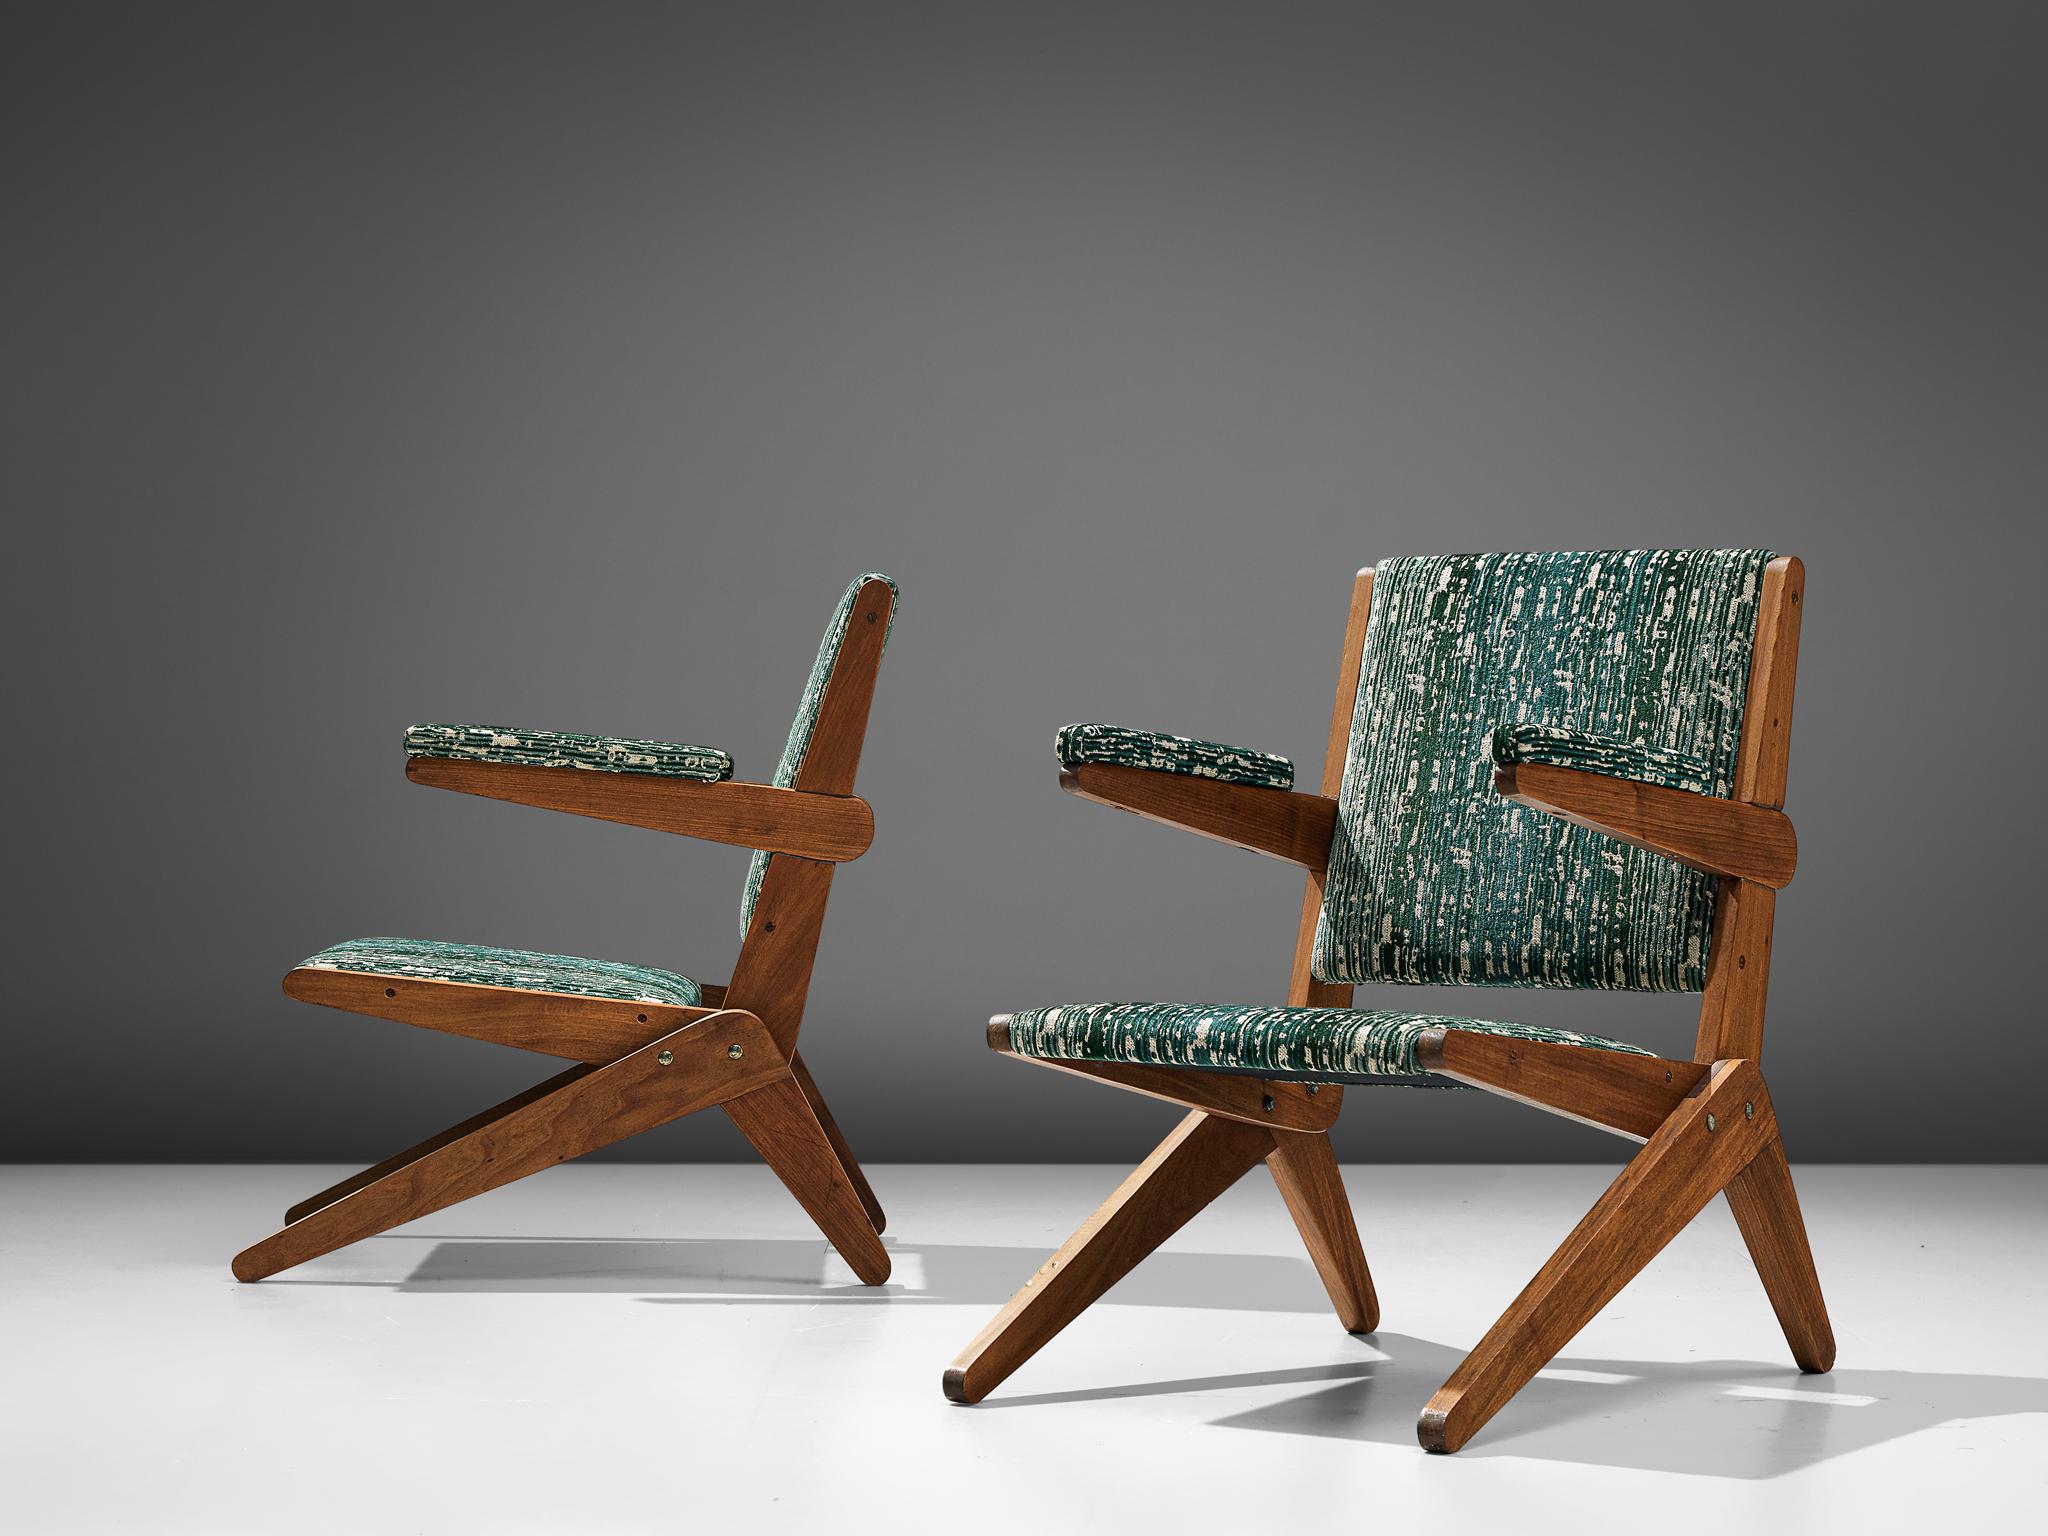 Paire de fauteuils à ciseaux, bois dur brésilien et tissu, Brésil, vers 1950

Ces fauteuils brésiliens exceptionnellement rares reflètent la quintessence de l'éthique brésilienne des années 1950. La conception témoigne de la beauté de